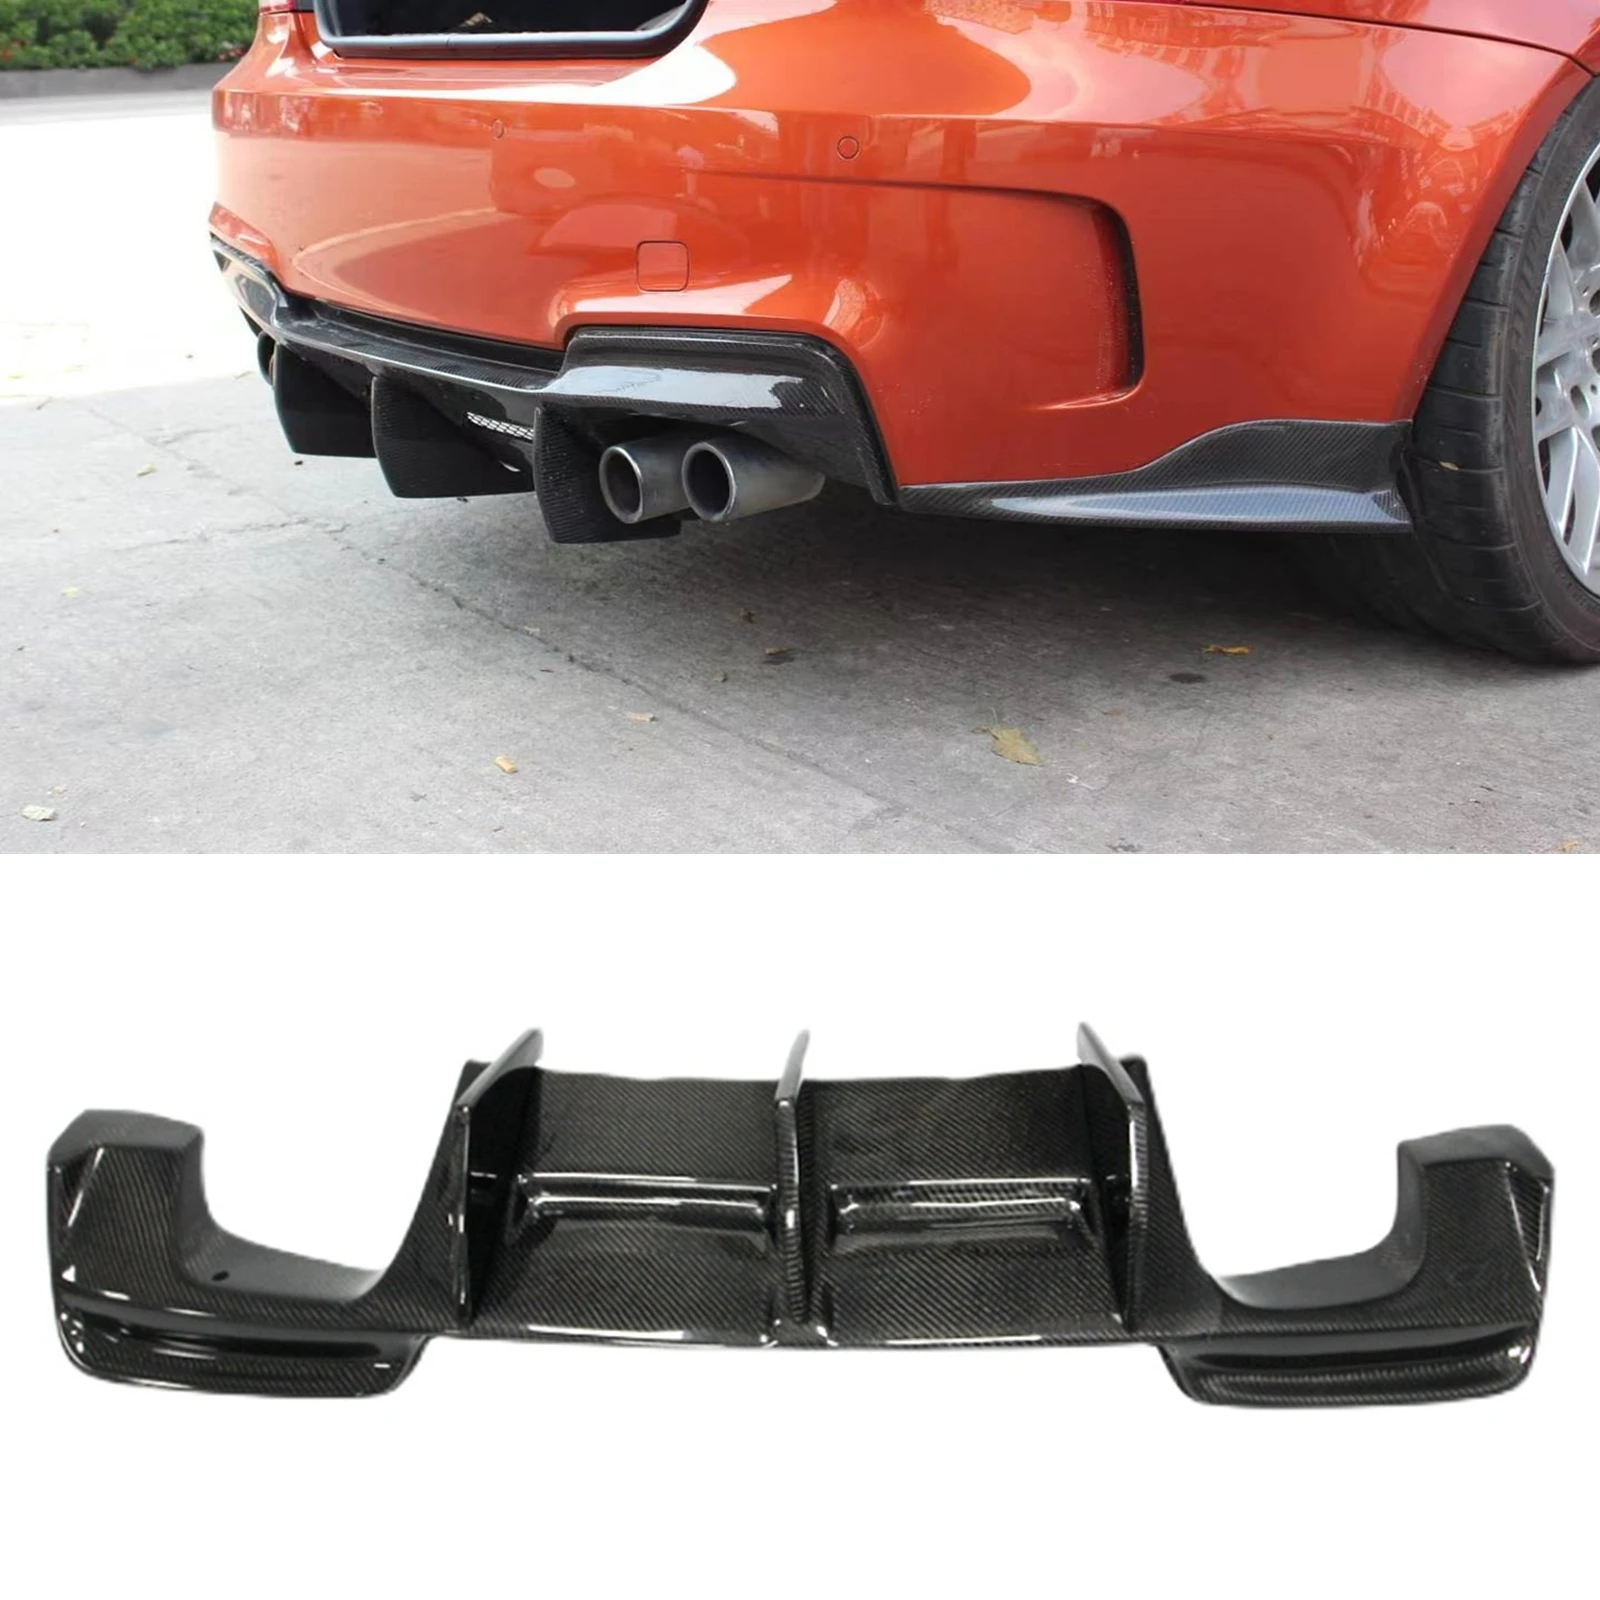 

Задний бампер диффузор губа ДЛЯ BMW E82 1M 2011-2013 RZ Стиль Настоящее углеродное волокно автомобильный спойлер фотопластина разделитель для ботин...